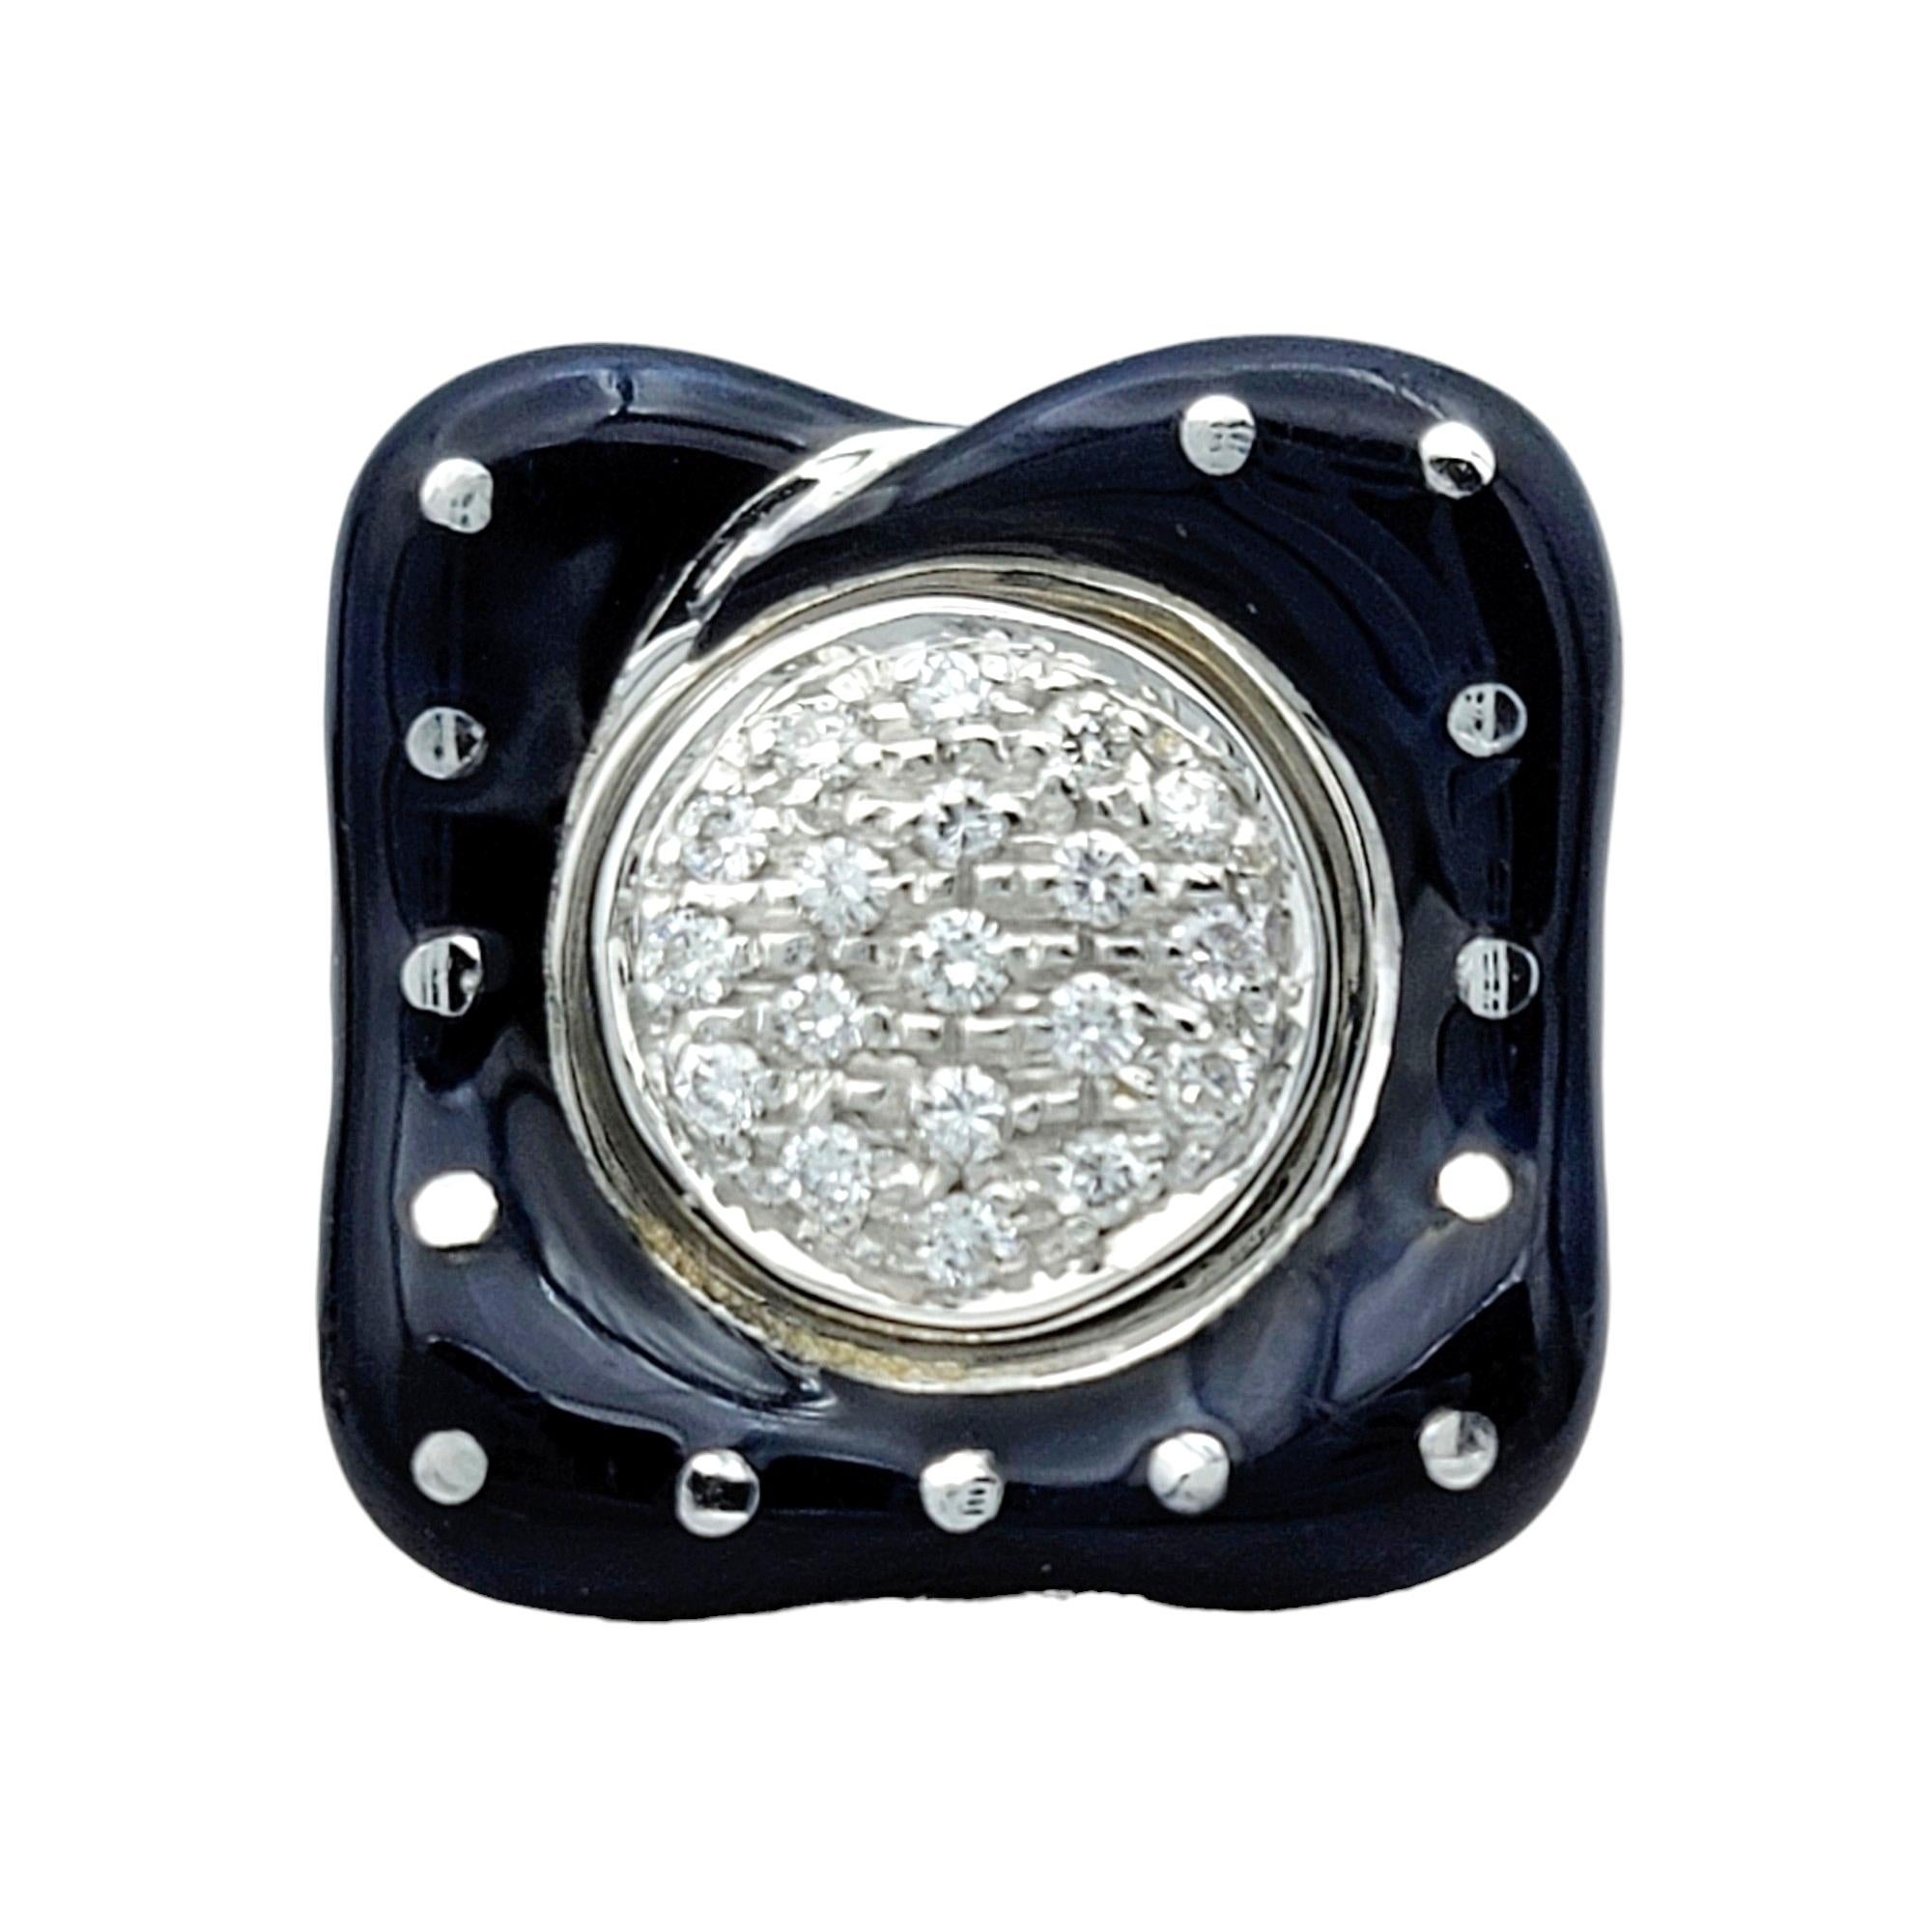 Ring Größe: 6.5

Der Diamant-Cluster-Ring La Nouvelle Bague ist ein atemberaubendes Zeugnis zeitgenössischer Eleganz. Dieser Ring aus strahlendem 18-karätigem Weißgold besticht durch sein fesselndes Design, das von einer exquisiten blauen,